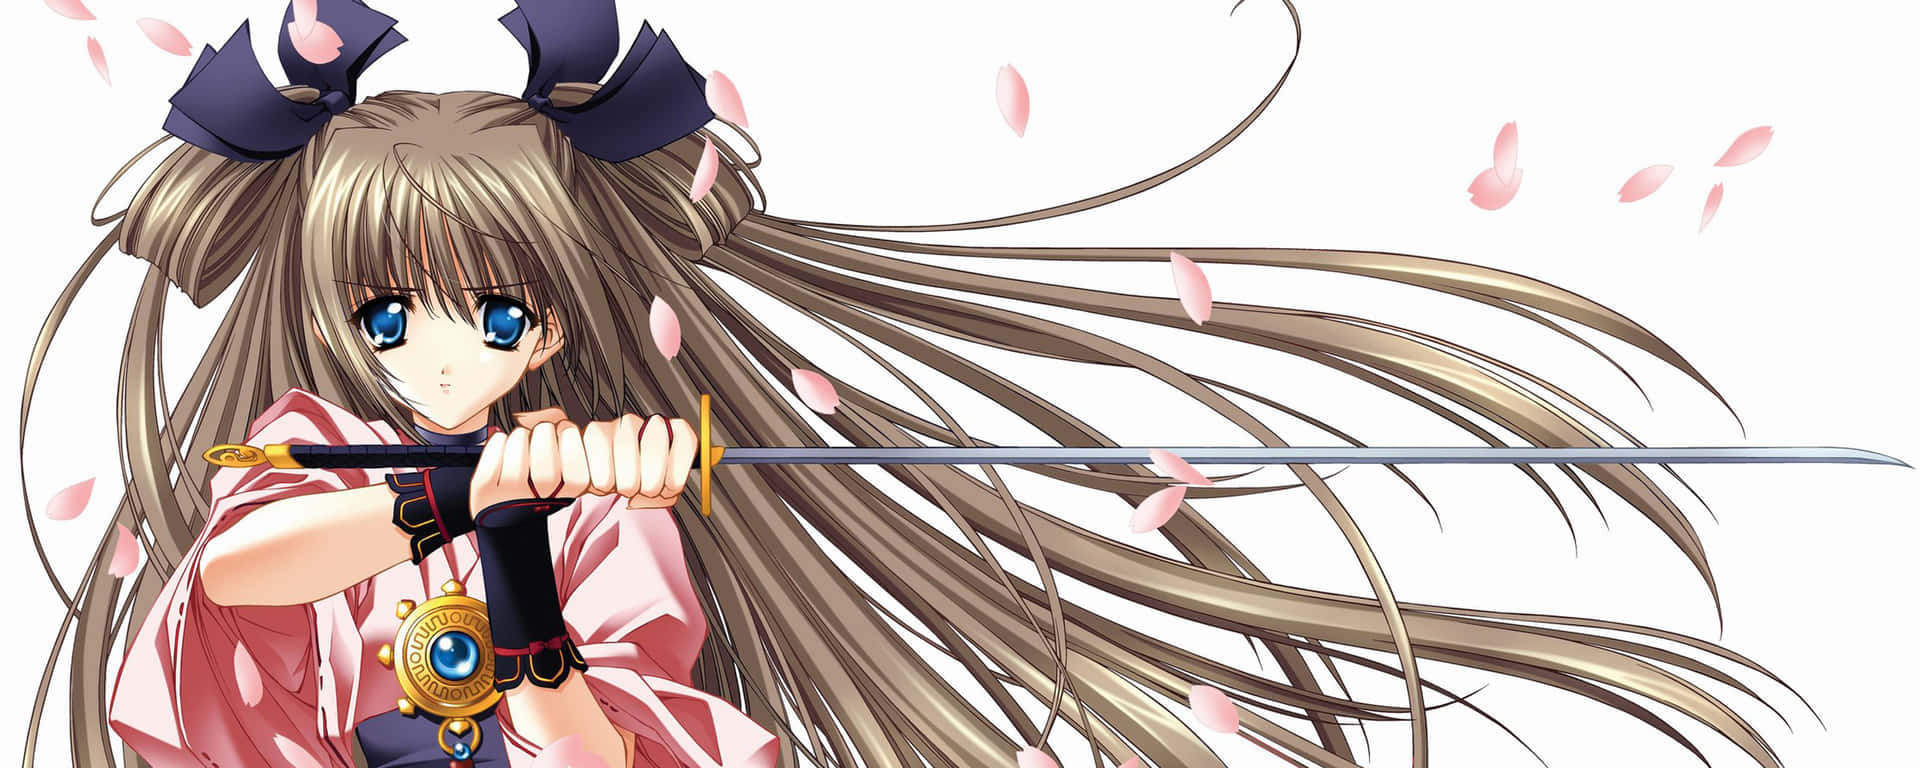 Fondode Pantalla De Anime Chica Con Espada Para Dos Monitores. Fondo de pantalla